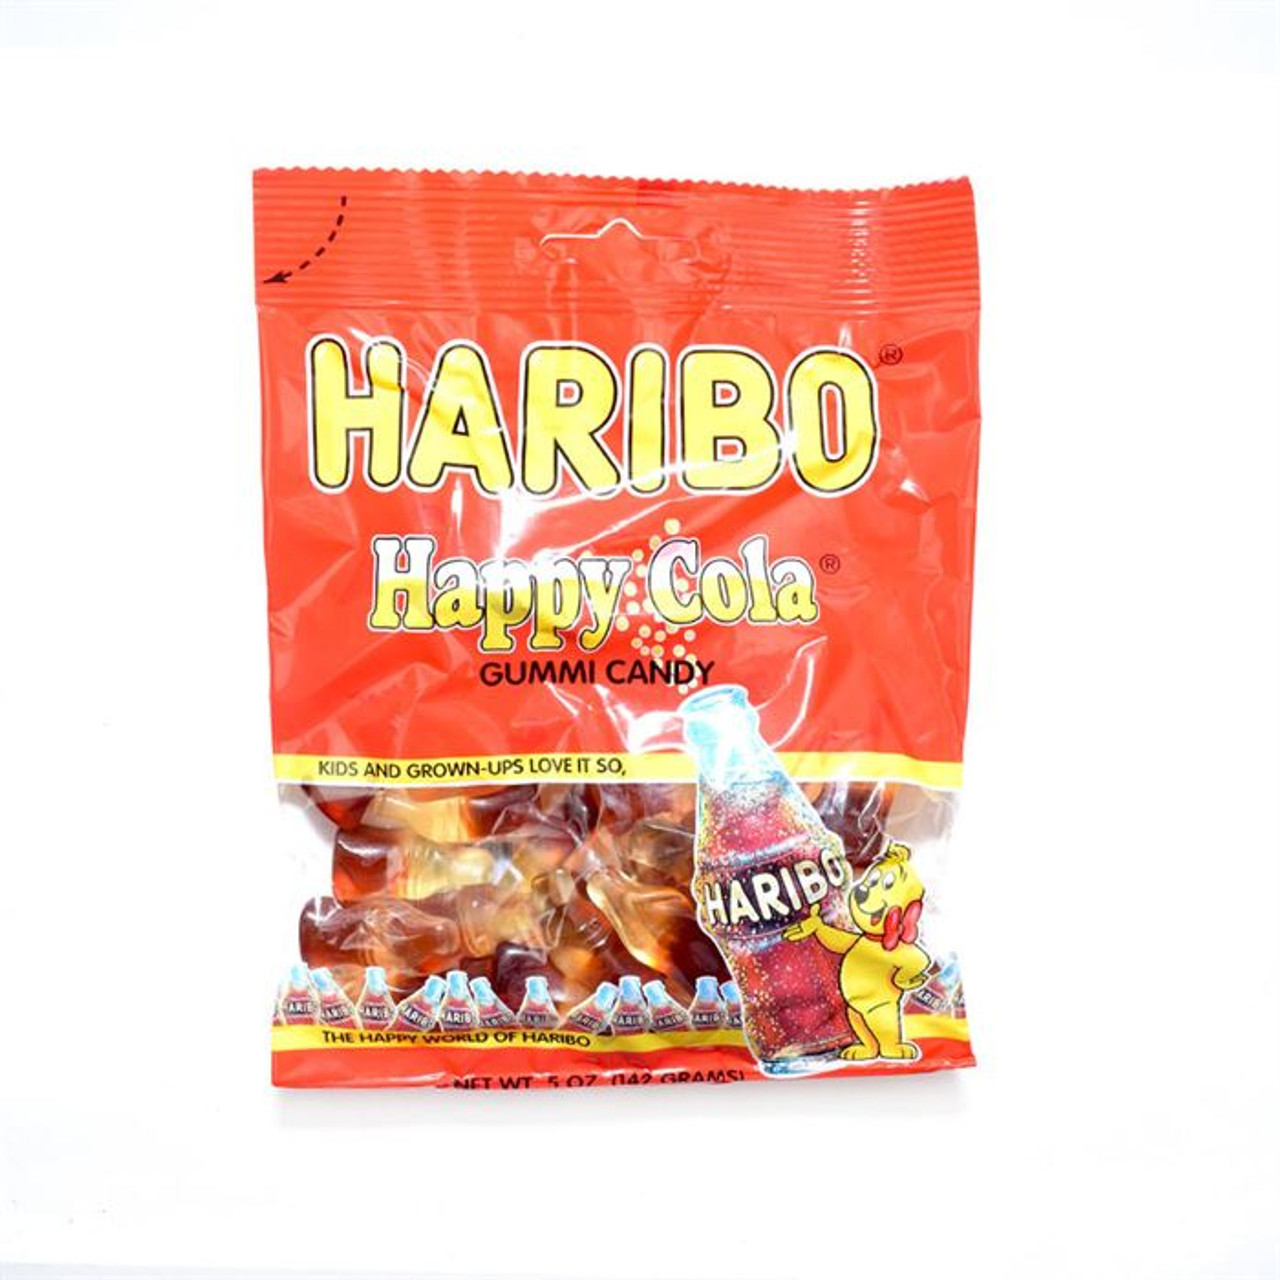 HARIBO Happy Cola Gummi Candy 8oz